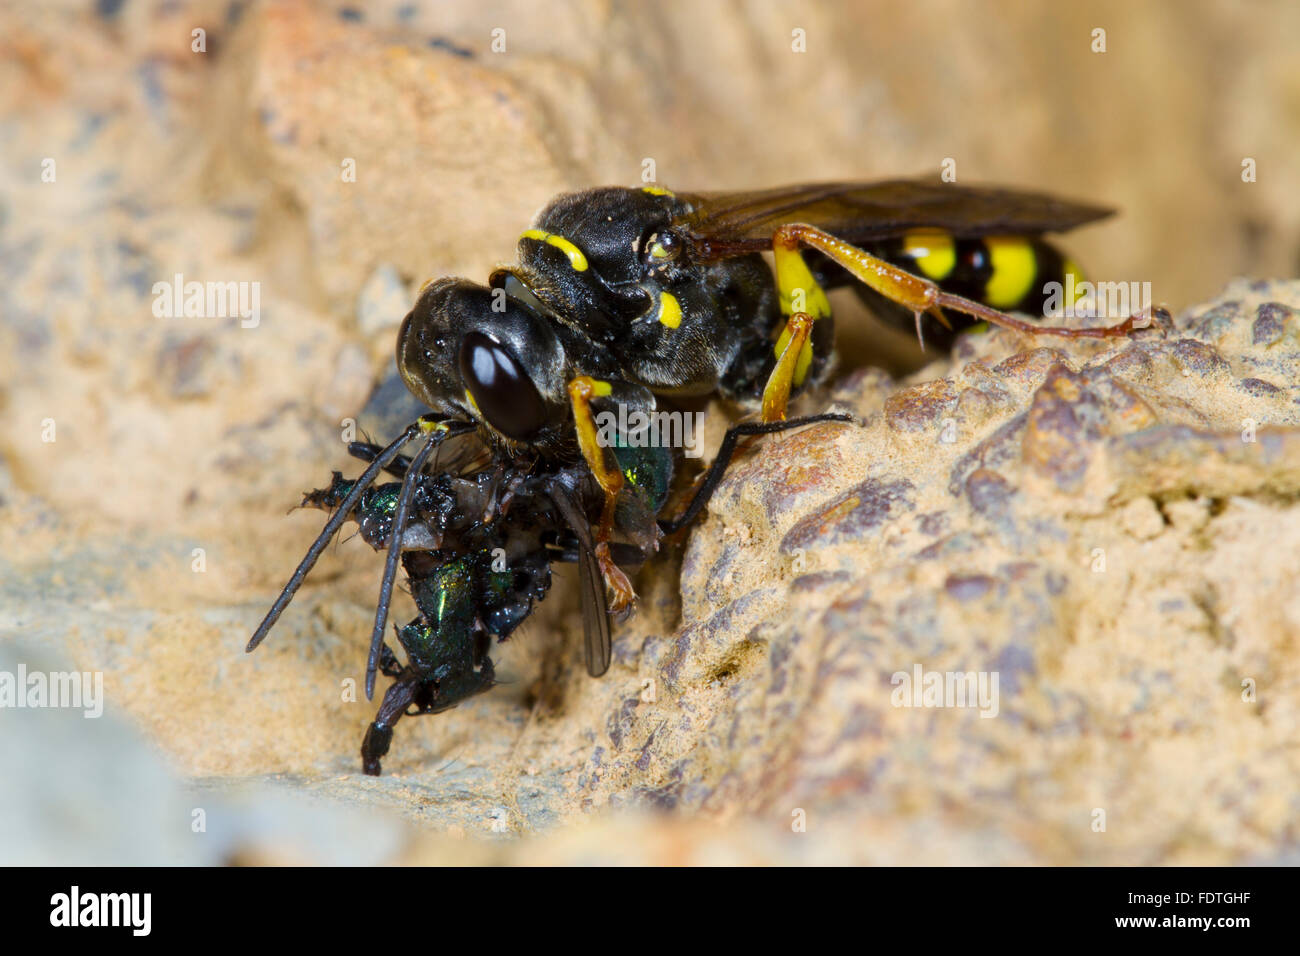 Domaine digger wasp (Mellinus arvensis) femelle adulte mange une mouche. Powys, Pays de Galles, septembre. Banque D'Images